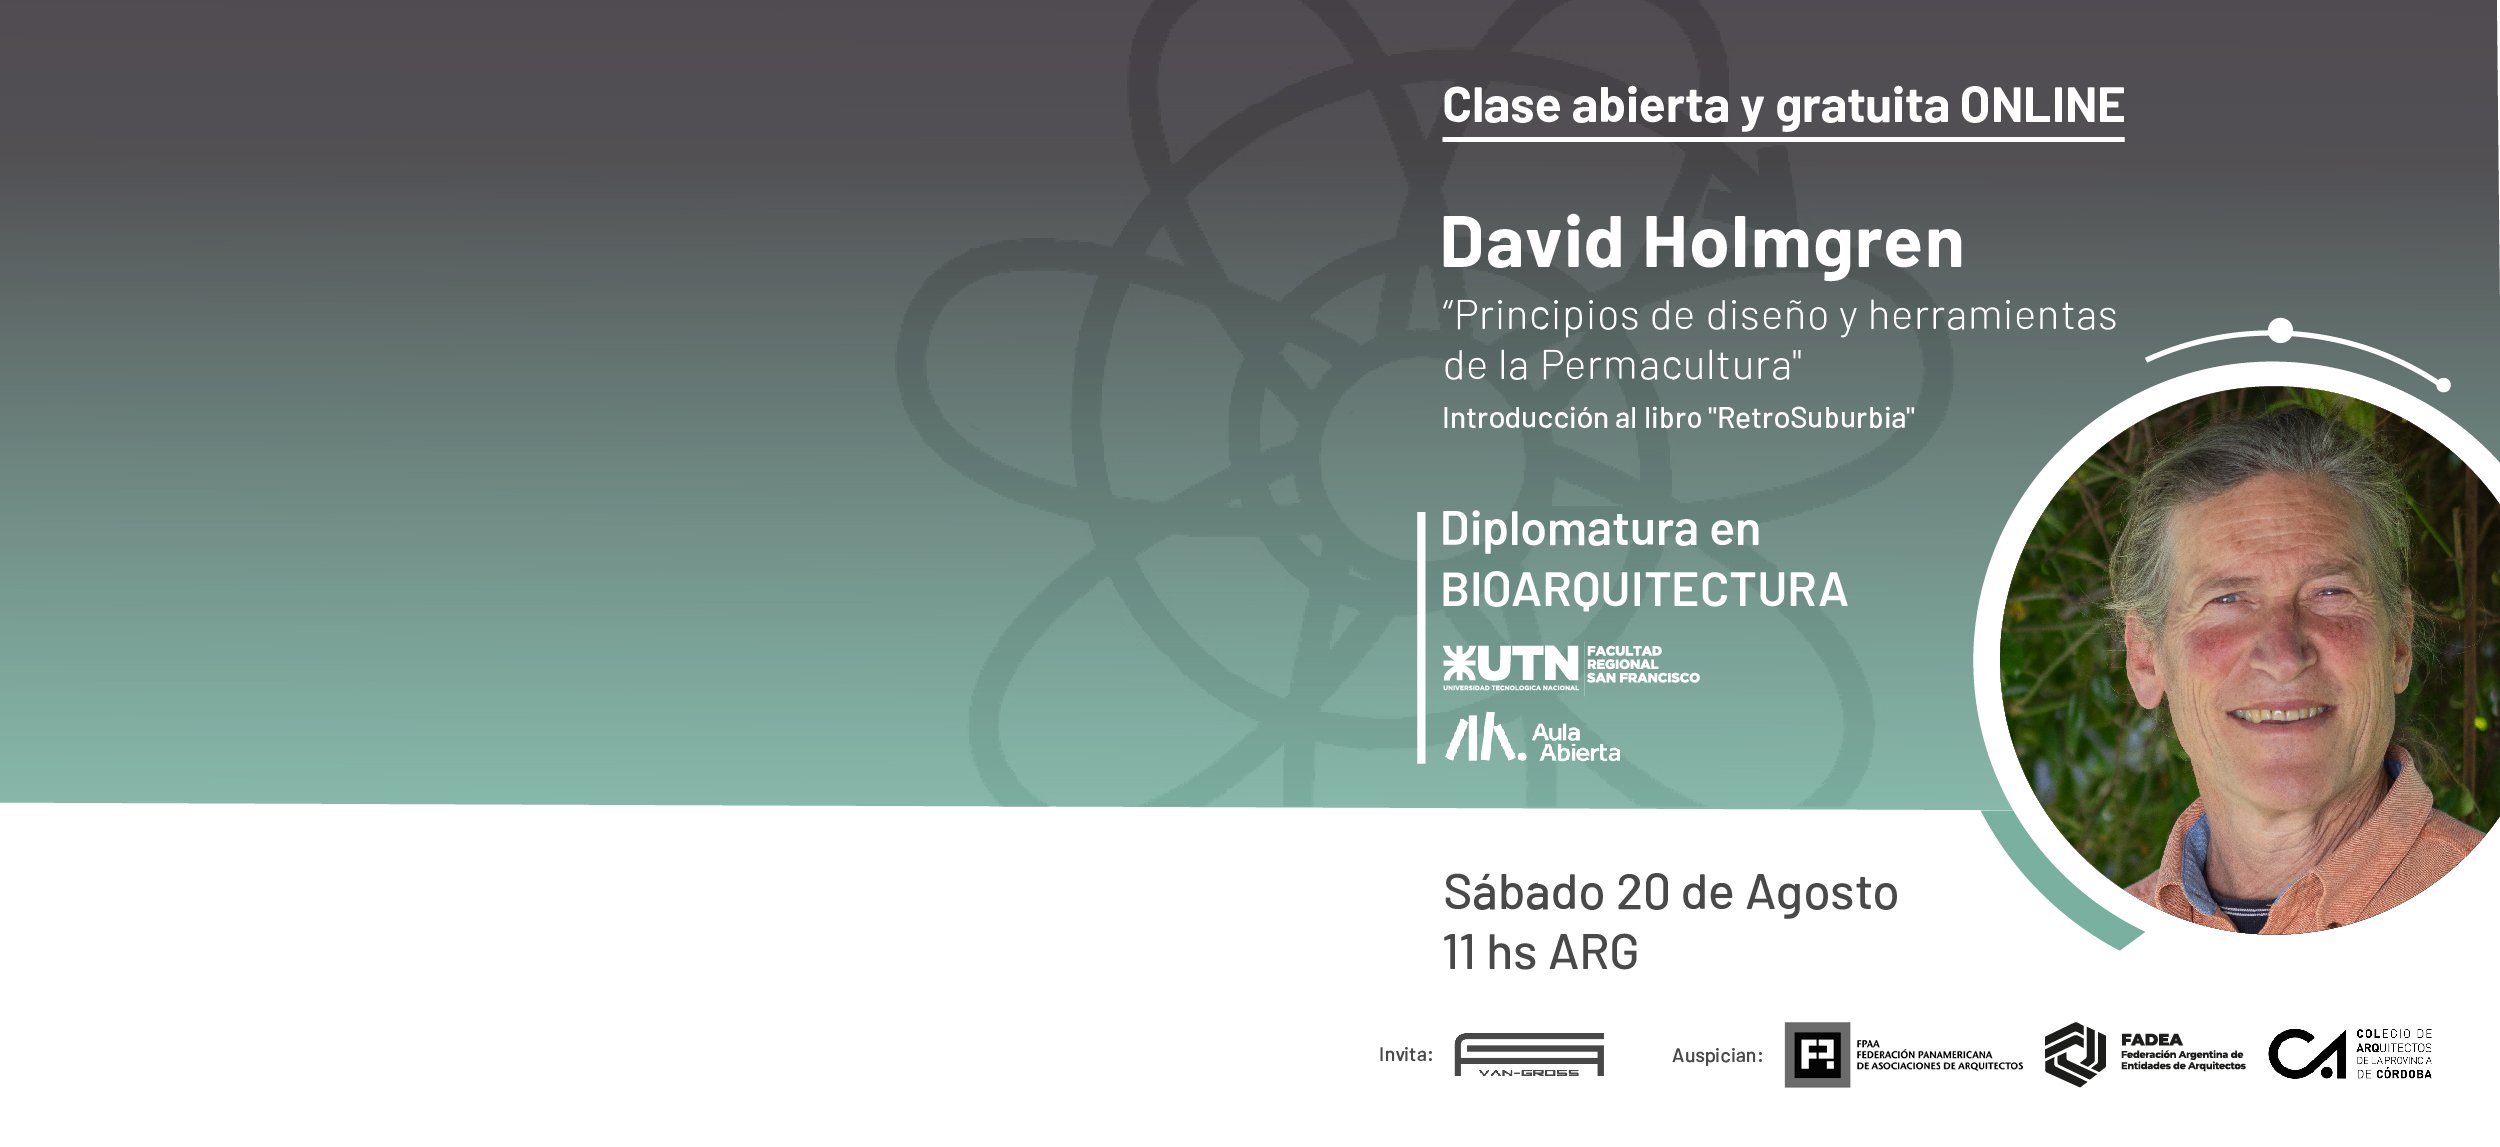 CLASE ABIERTA Y GRATUITA CON DAVID HOLMGREN